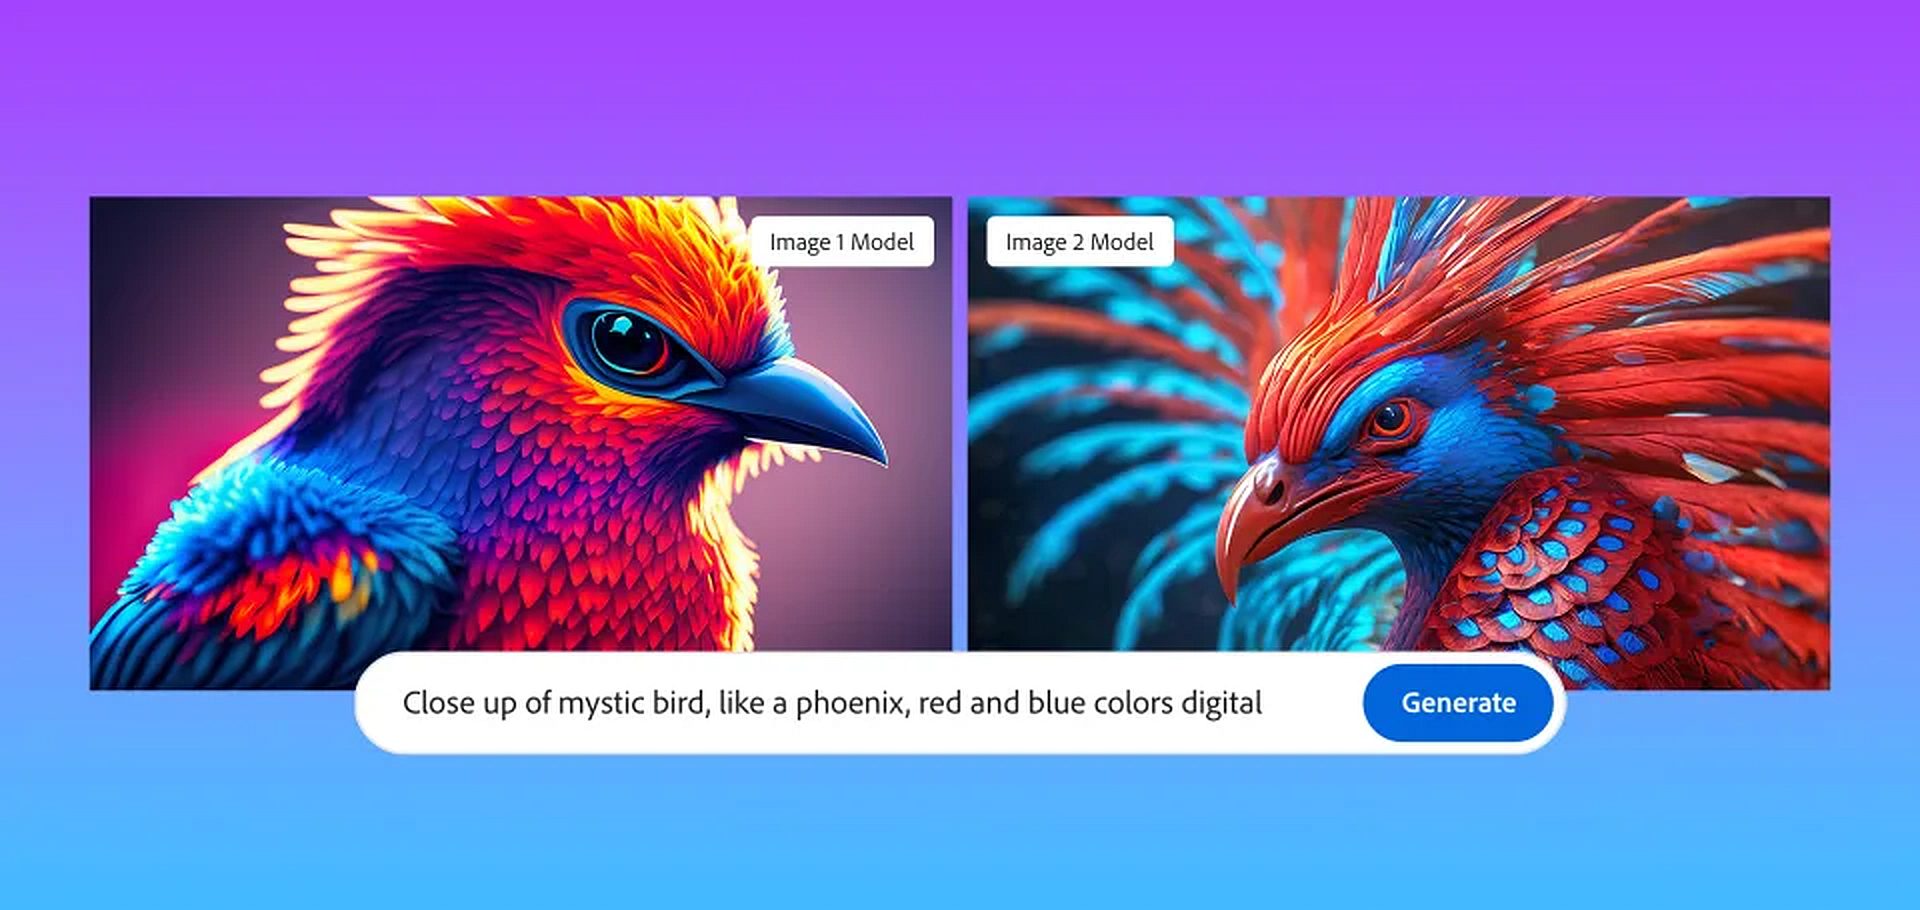 Adobe Firefly Image 2: mejora la generación de imágenes con funciones avanzadas para el control y la creatividad. Sigue leyendo y aprende a usarlo.